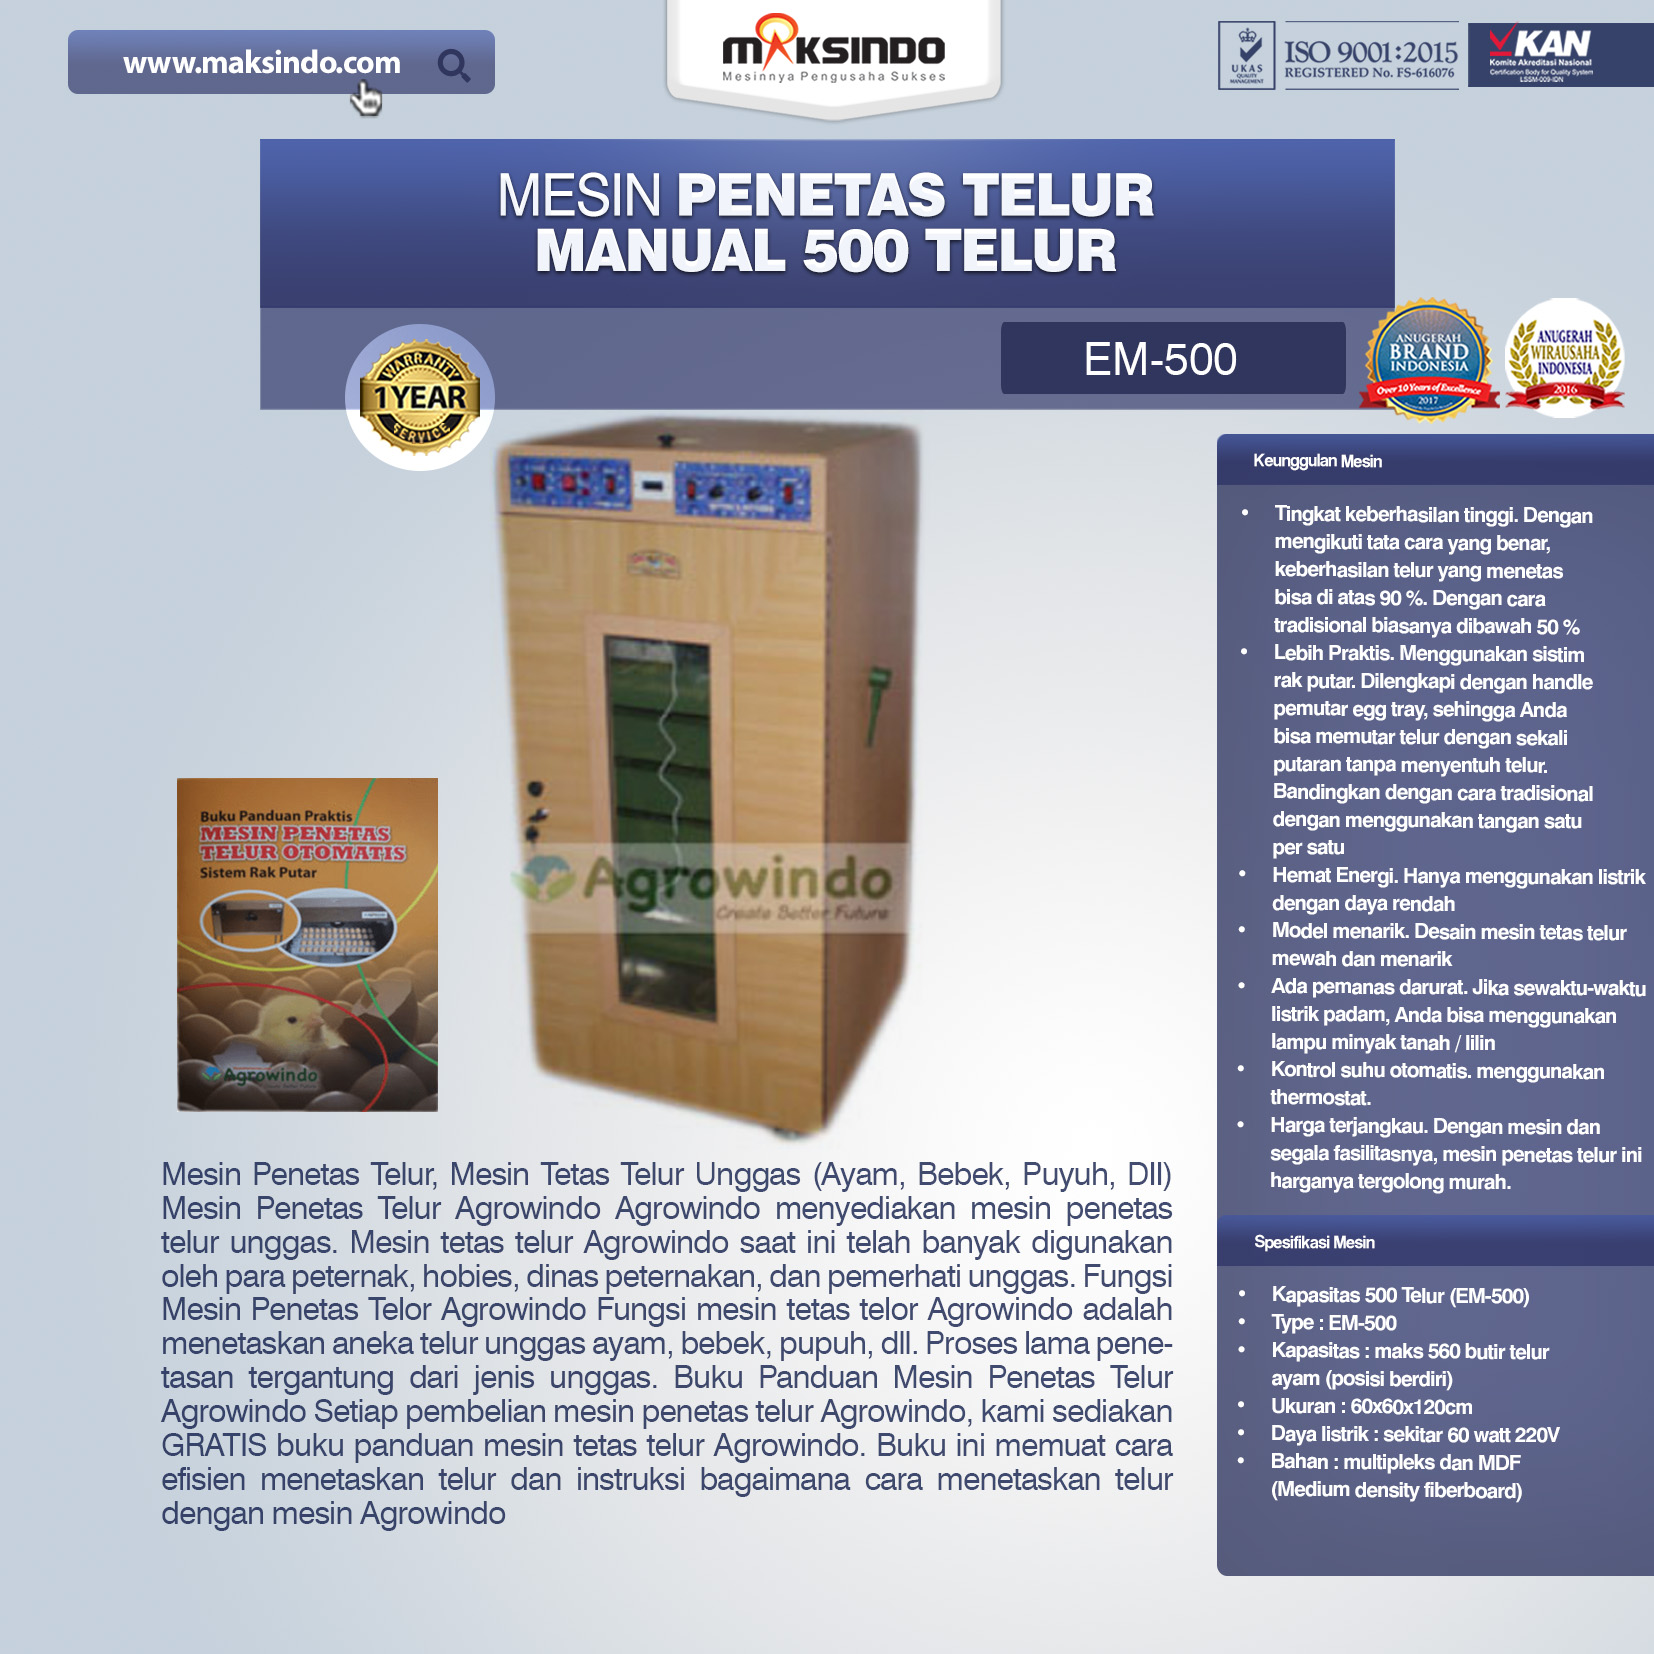 Jual Mesin Penetas Telur Manual 500 Telur (EM-500) di Malang